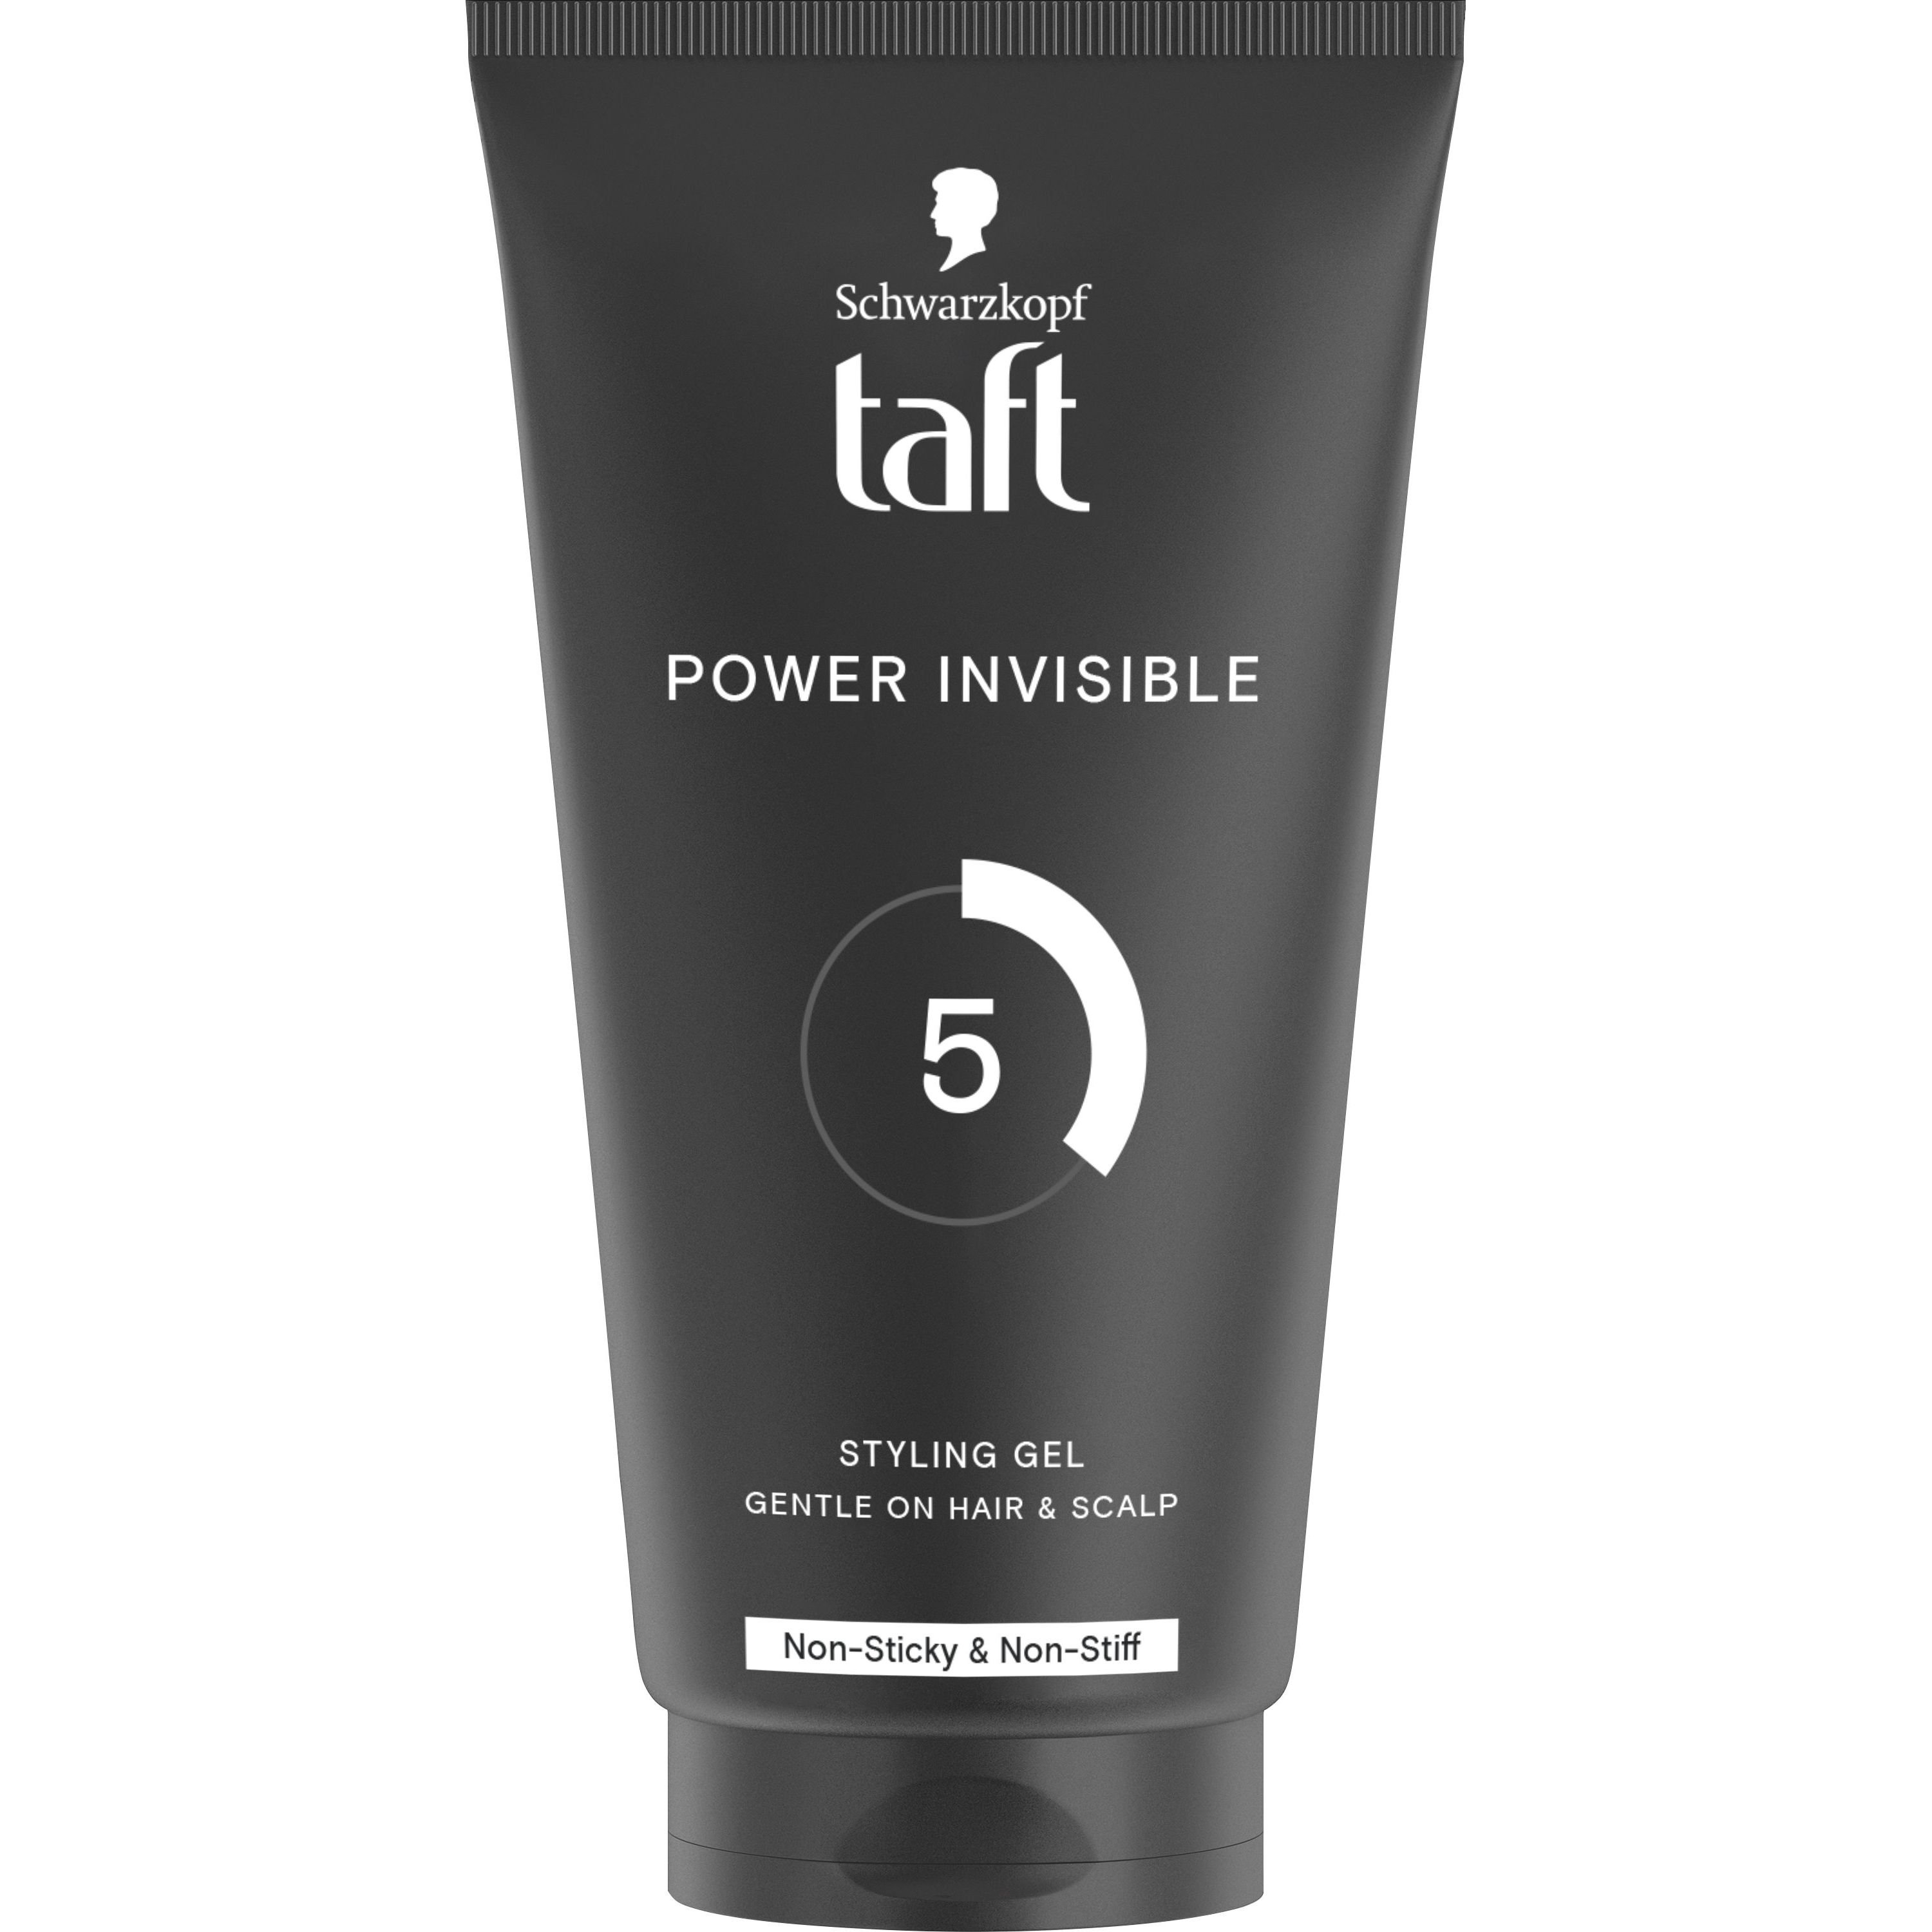 Гель для волос Taft Power Invisible 5, 150 мл - фото 1